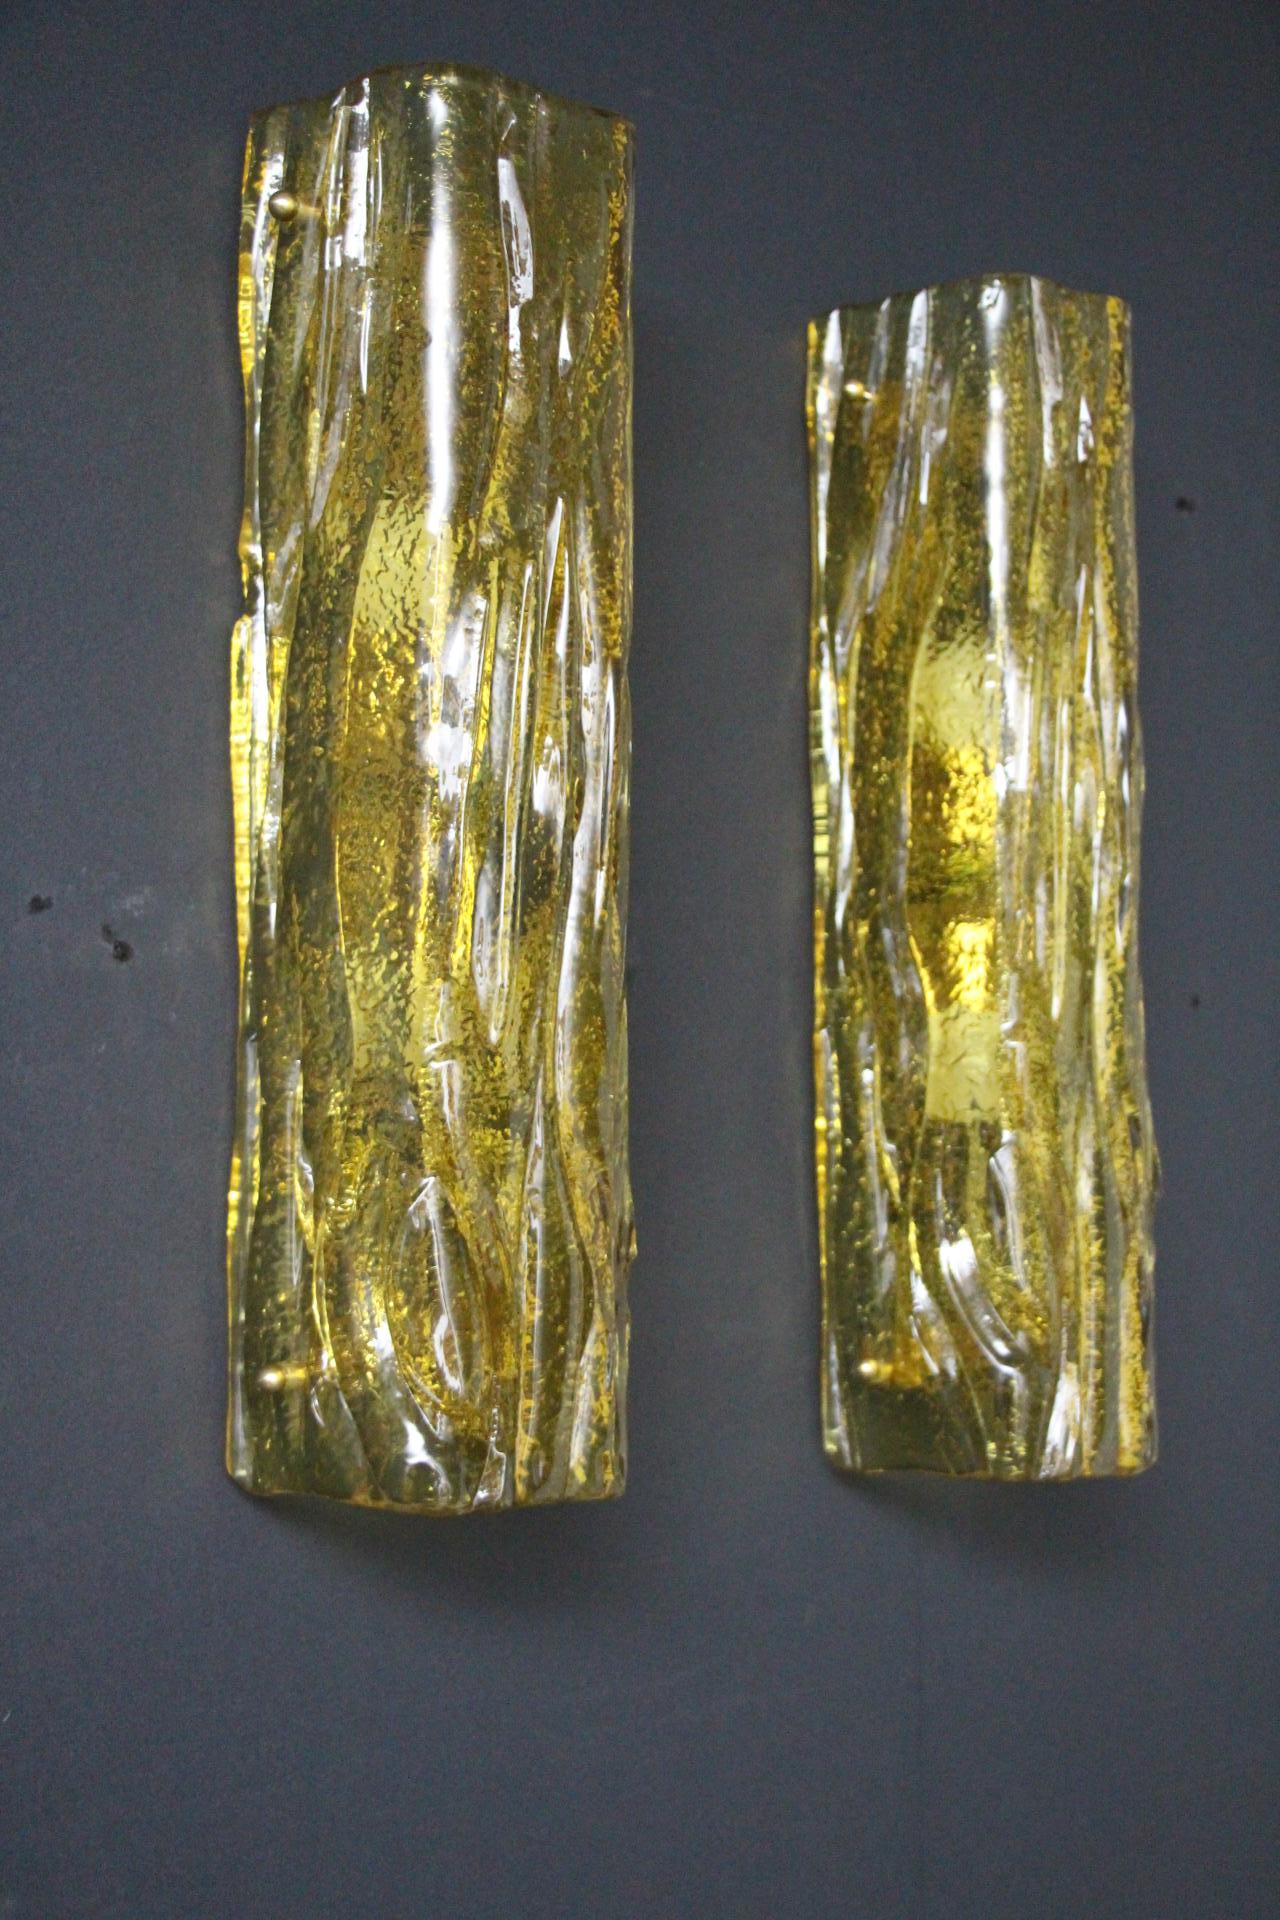 Cette très belle paire d'appliques a été conçue et réalisée individuellement à Murano . Ces appliques présentent de belles formes de tubes carrés avec de nombreux détails, comme les paillettes dorées capturées dans le verre.
Leur forme est simple et